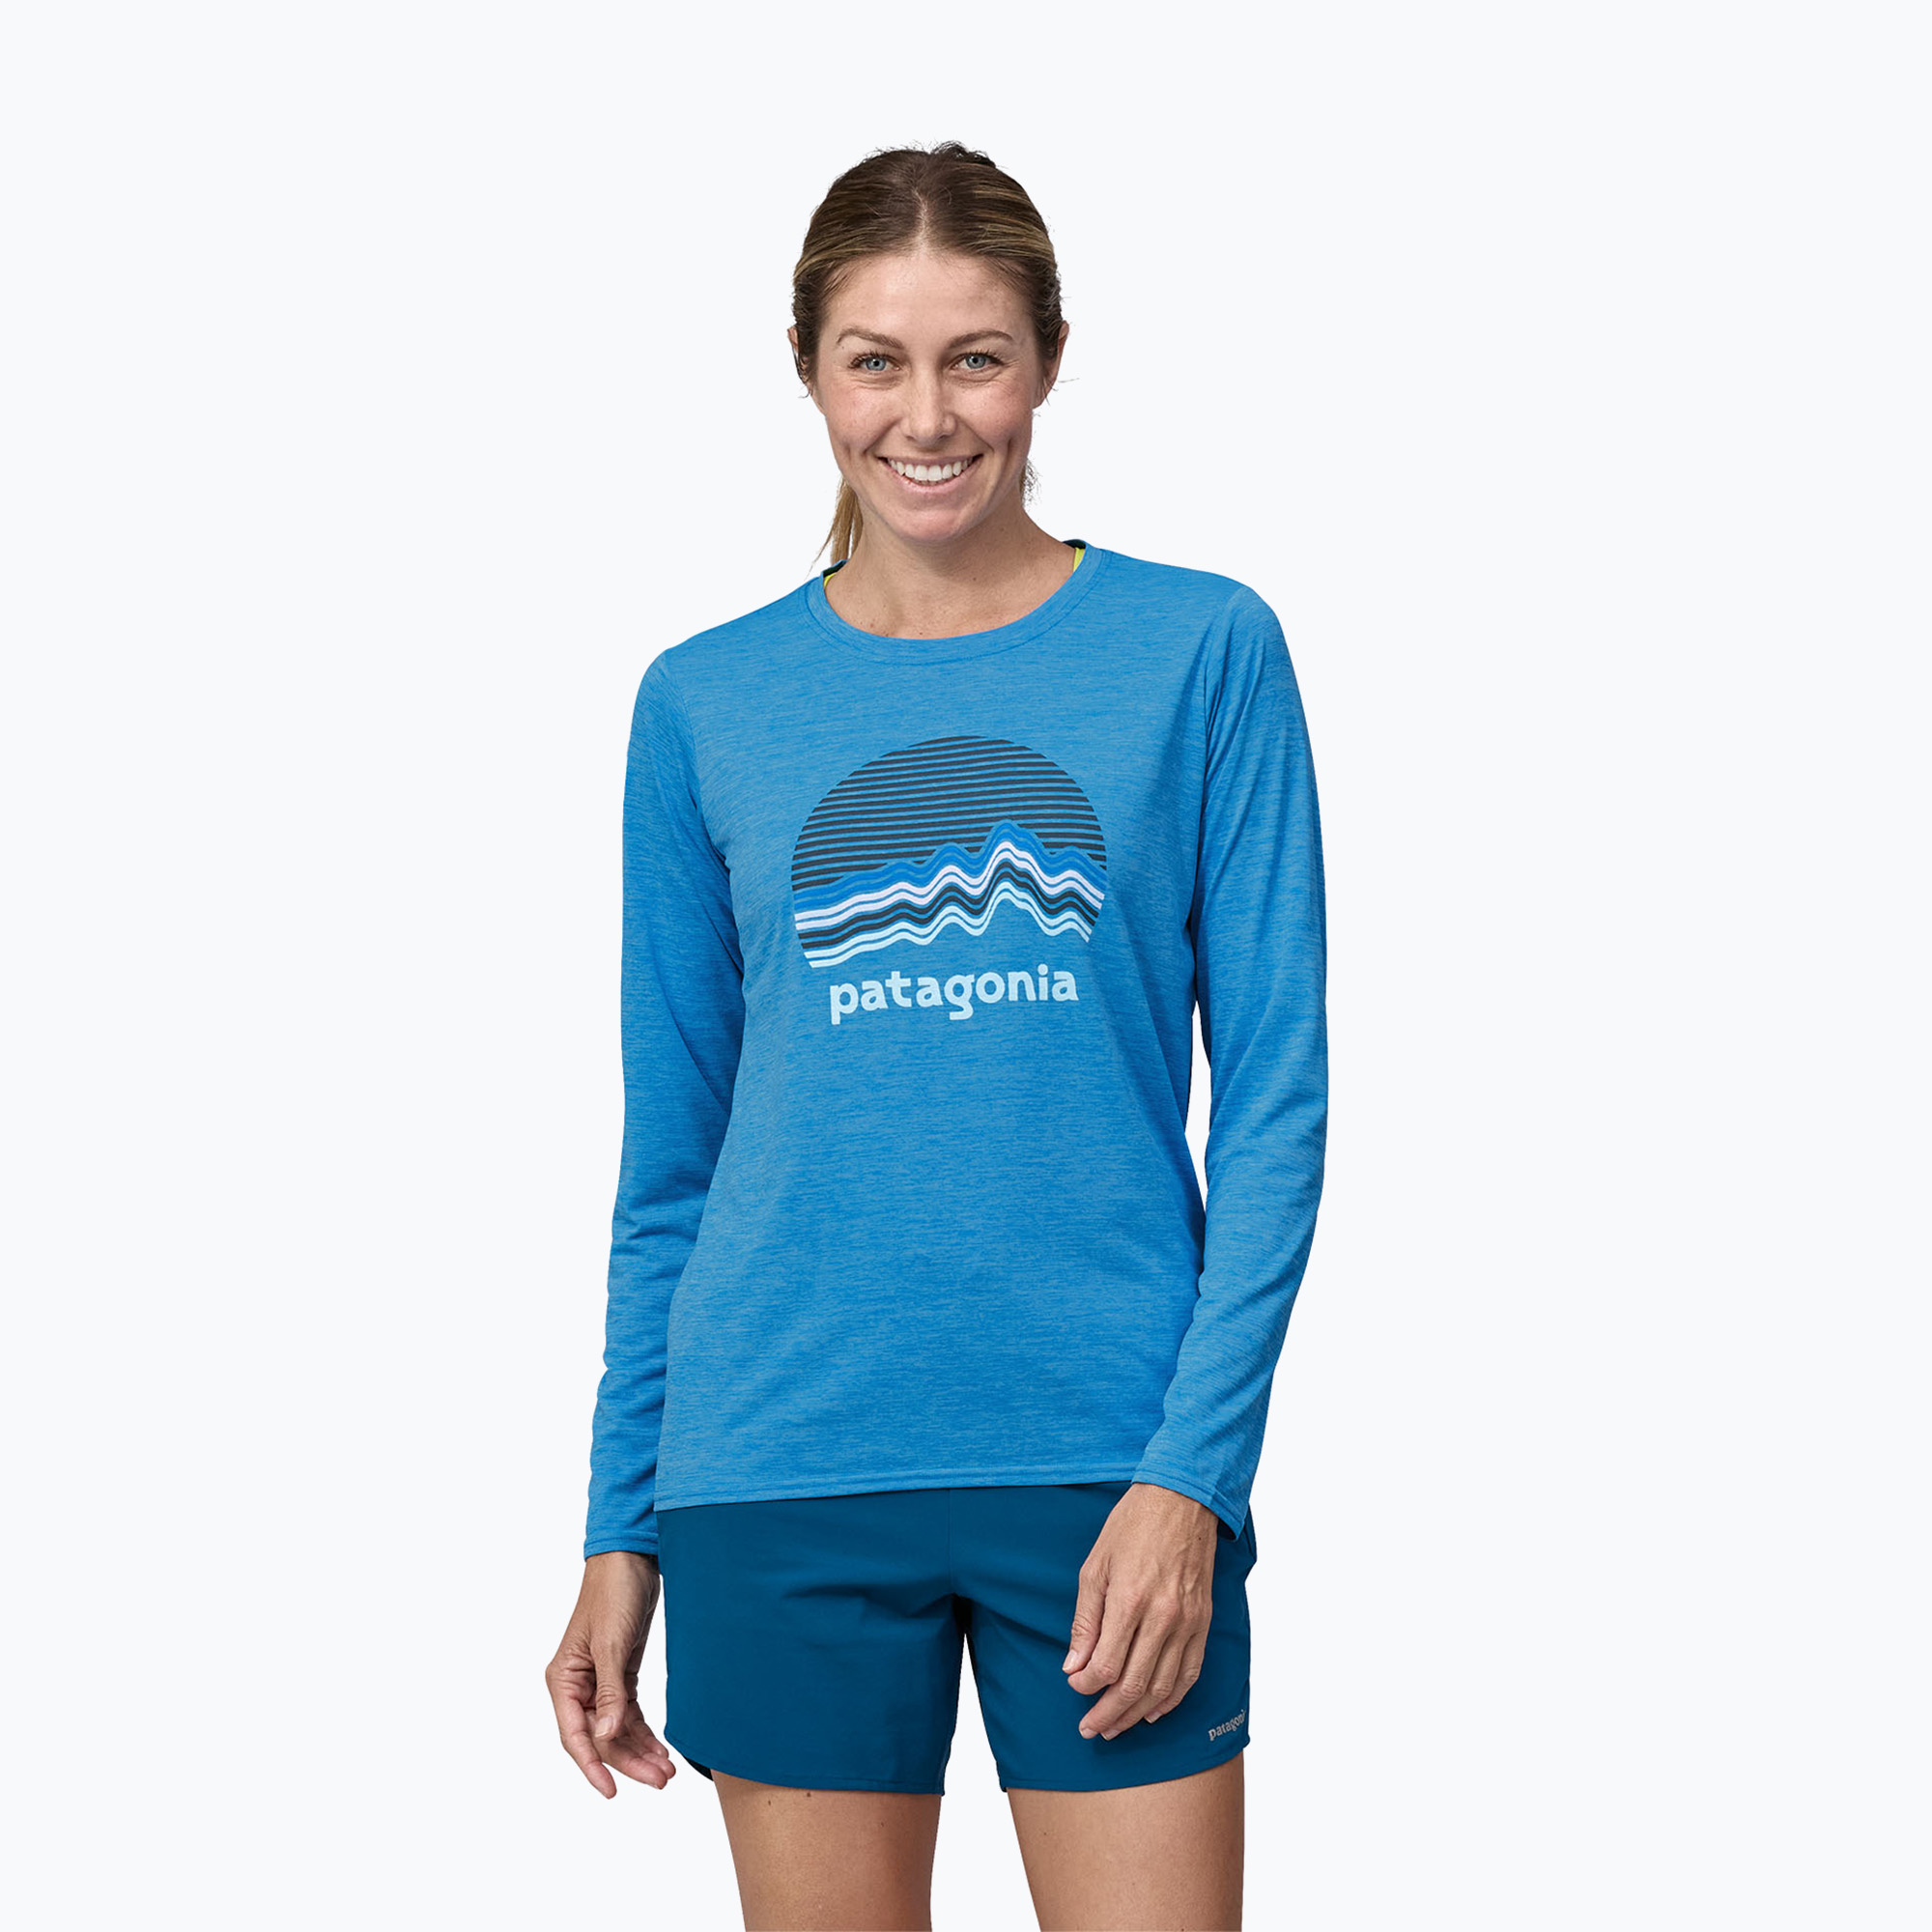 Дамска риза с графичен надпис Ridge rise moonlight/vessel blue x-dye с дълъг ръкав на Patagonia Cap Cool Daily